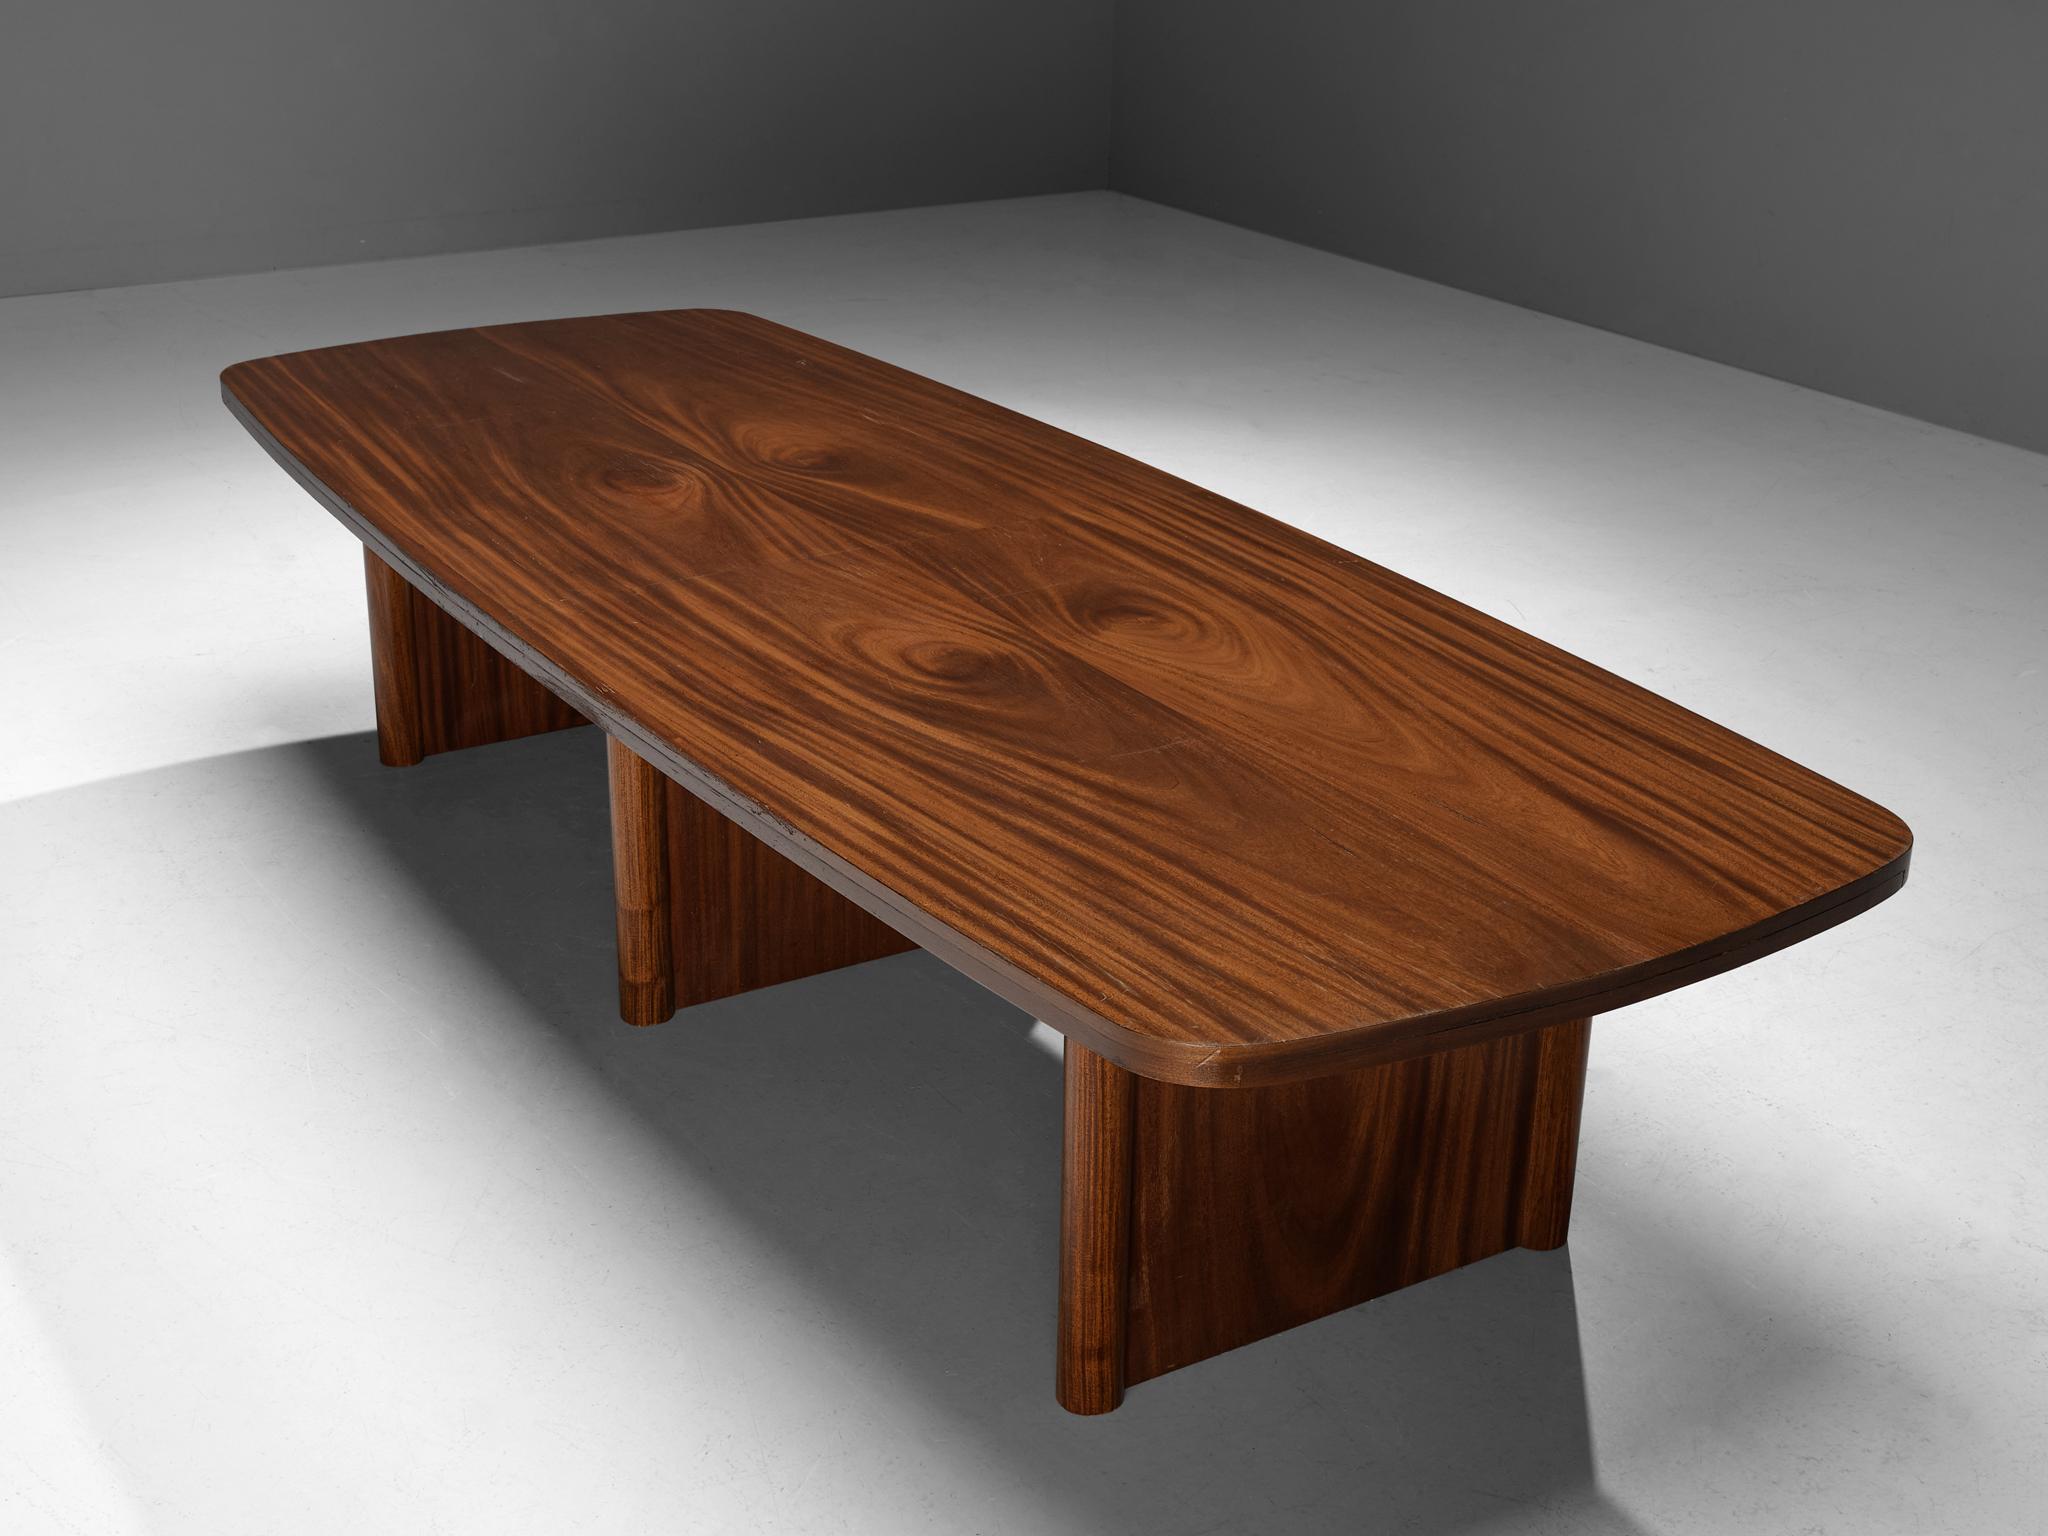 Esstisch oder Konferenztisch, Nussbaum, Dänemark, 1960er Jahre

Schöner und stimmungsvoller Tisch, hergestellt in Dänemark in den 1960er Jahren. Dieser Tisch hat eine beeindruckende Größe und eignet sich daher für den größeren Ess- oder